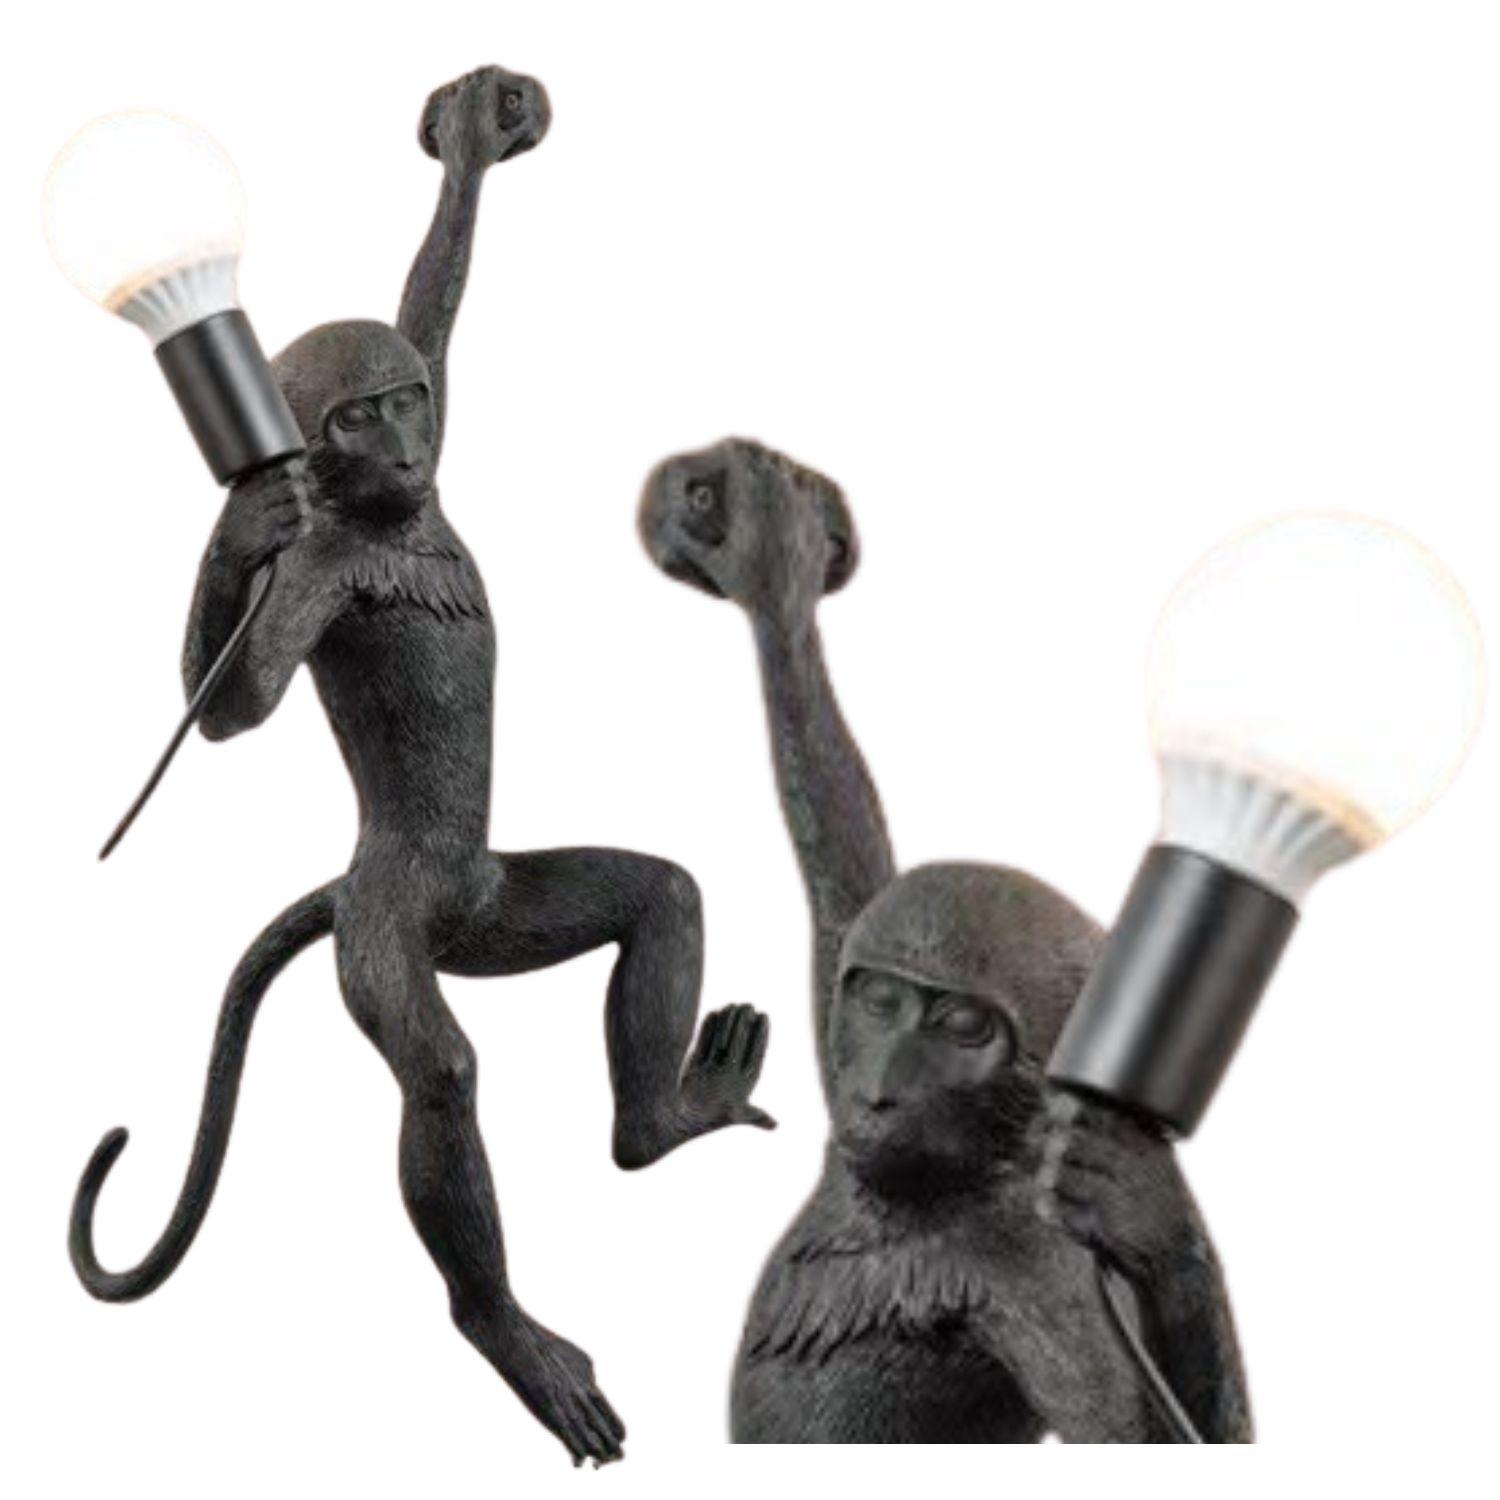 Stylowa lampa ścienna - małpka (lewa łapka)